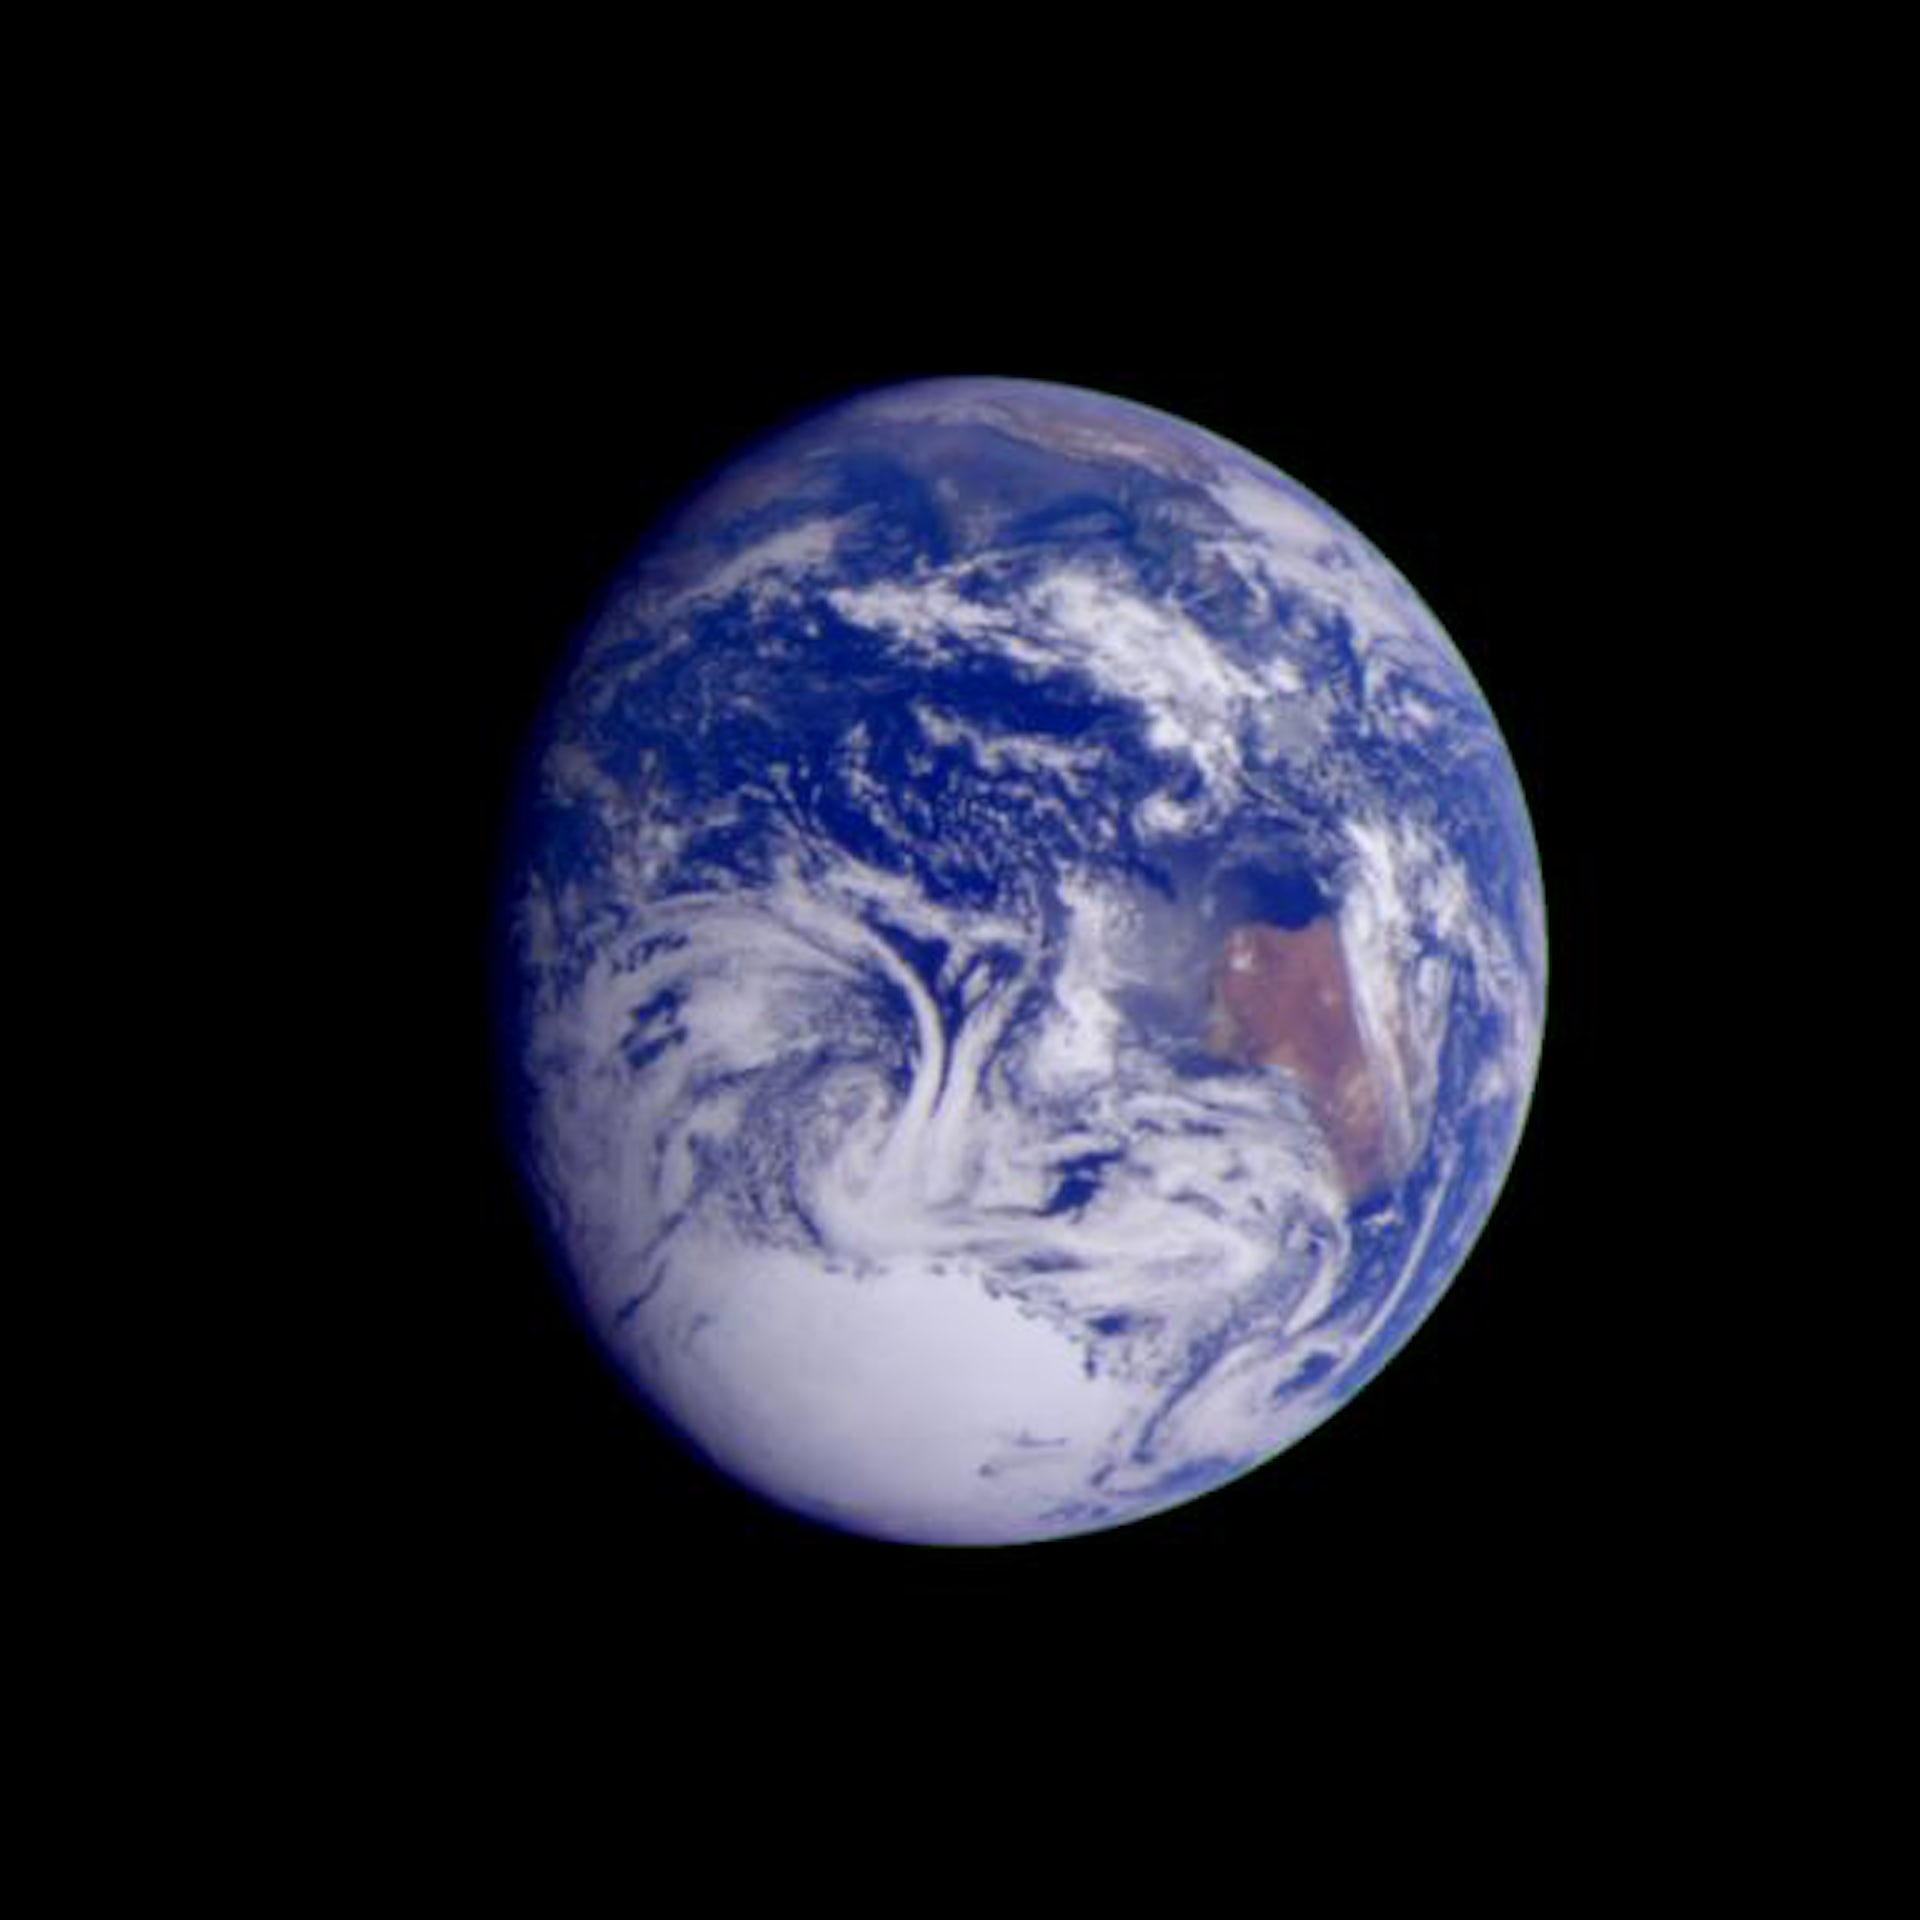 Hình ảnh được chụp bởi tàu vũ trụ Galileo ở khoảng cách 2.4 triệu km.